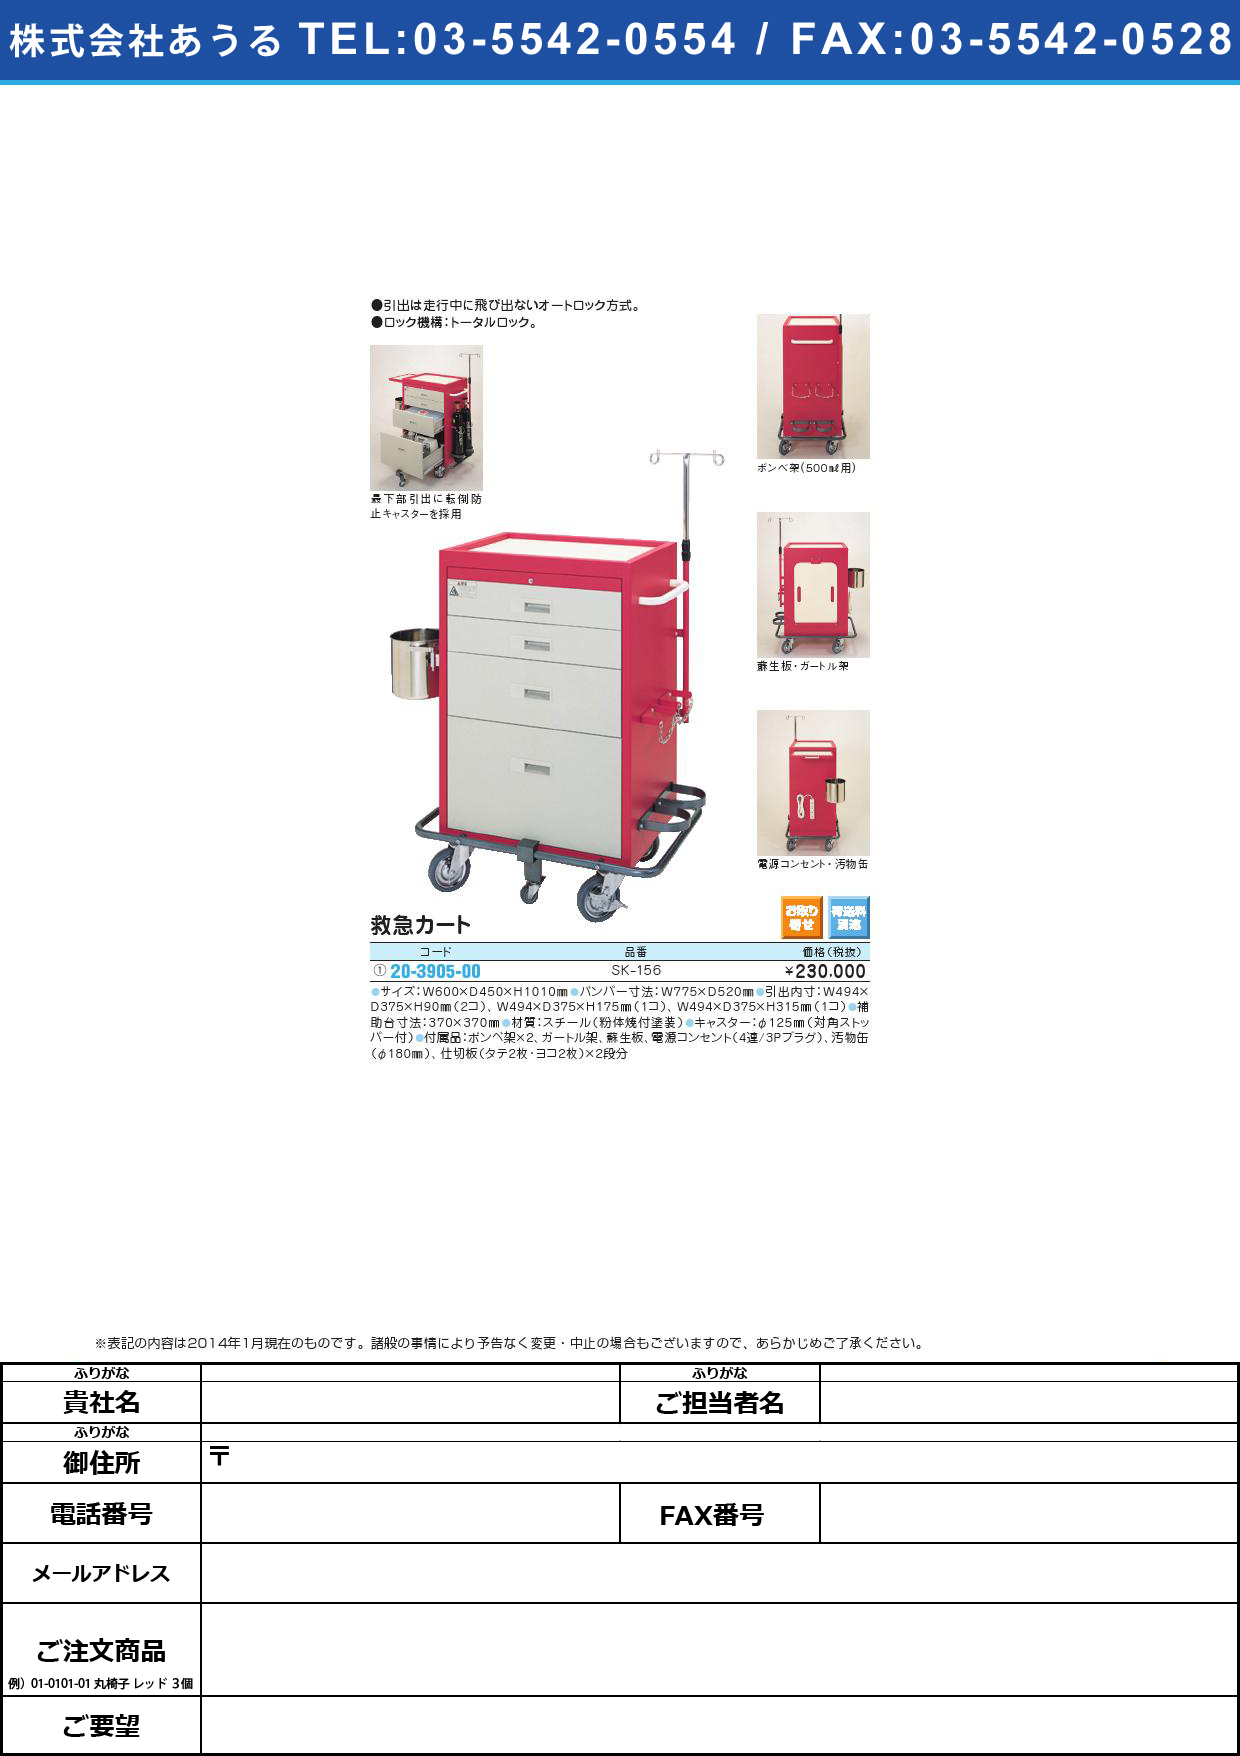 (20-3905-00)救急カート ｷｭｳｷｭｳｶｰﾄ(20-3905-00)SK-156【1台単位】【2014年カタログ商品】